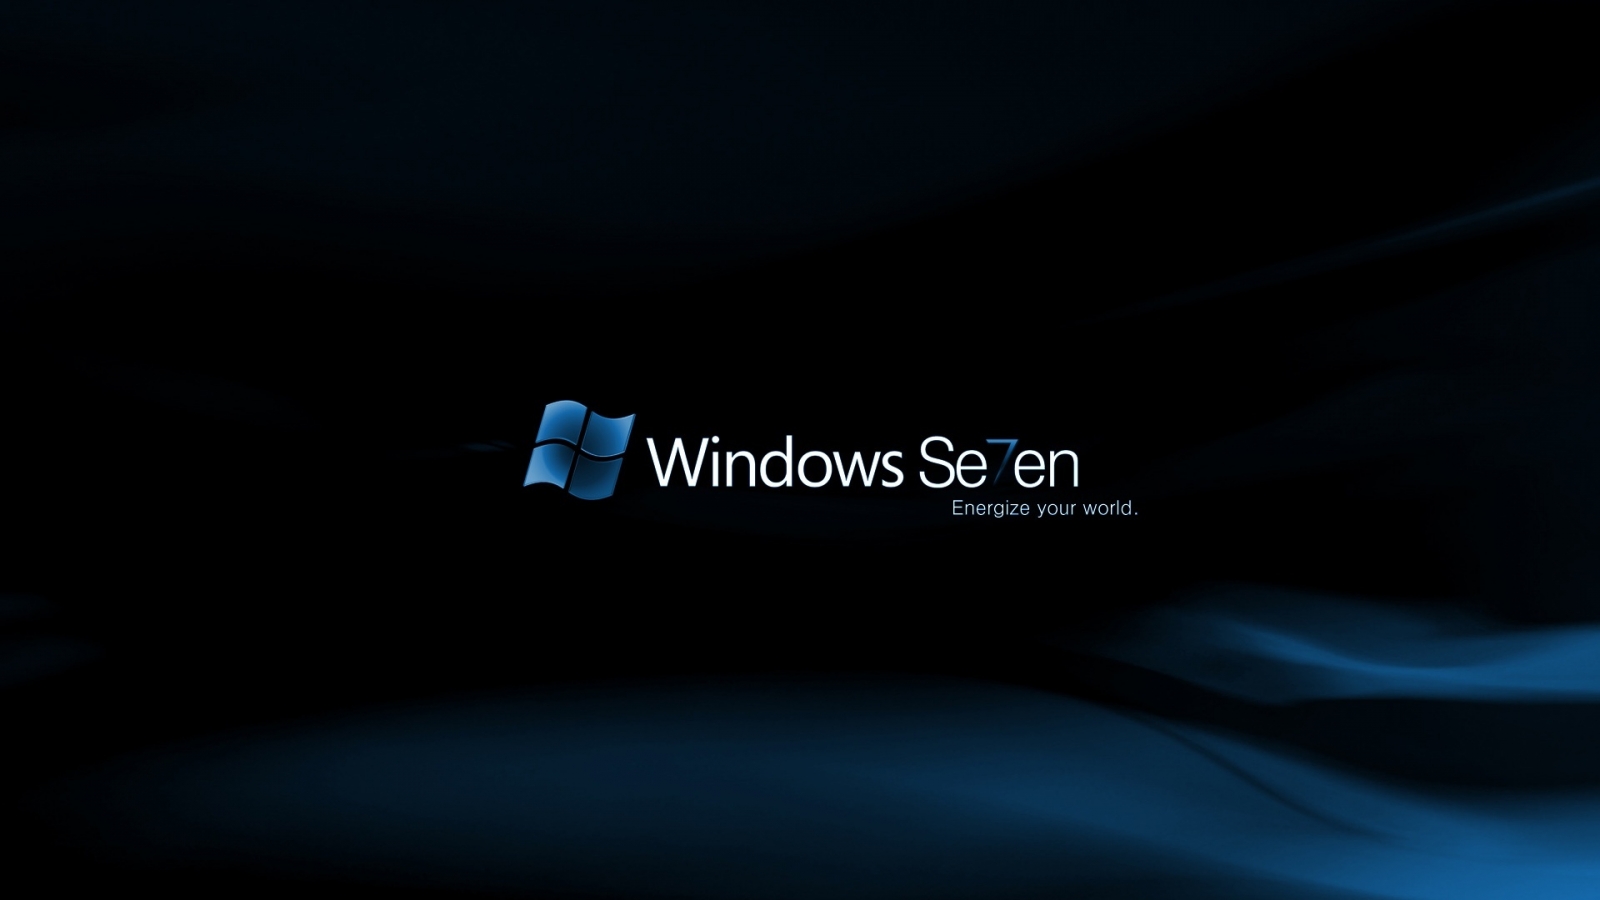 Windows Se7en Midnight for 1600 x 900 HDTV resolution